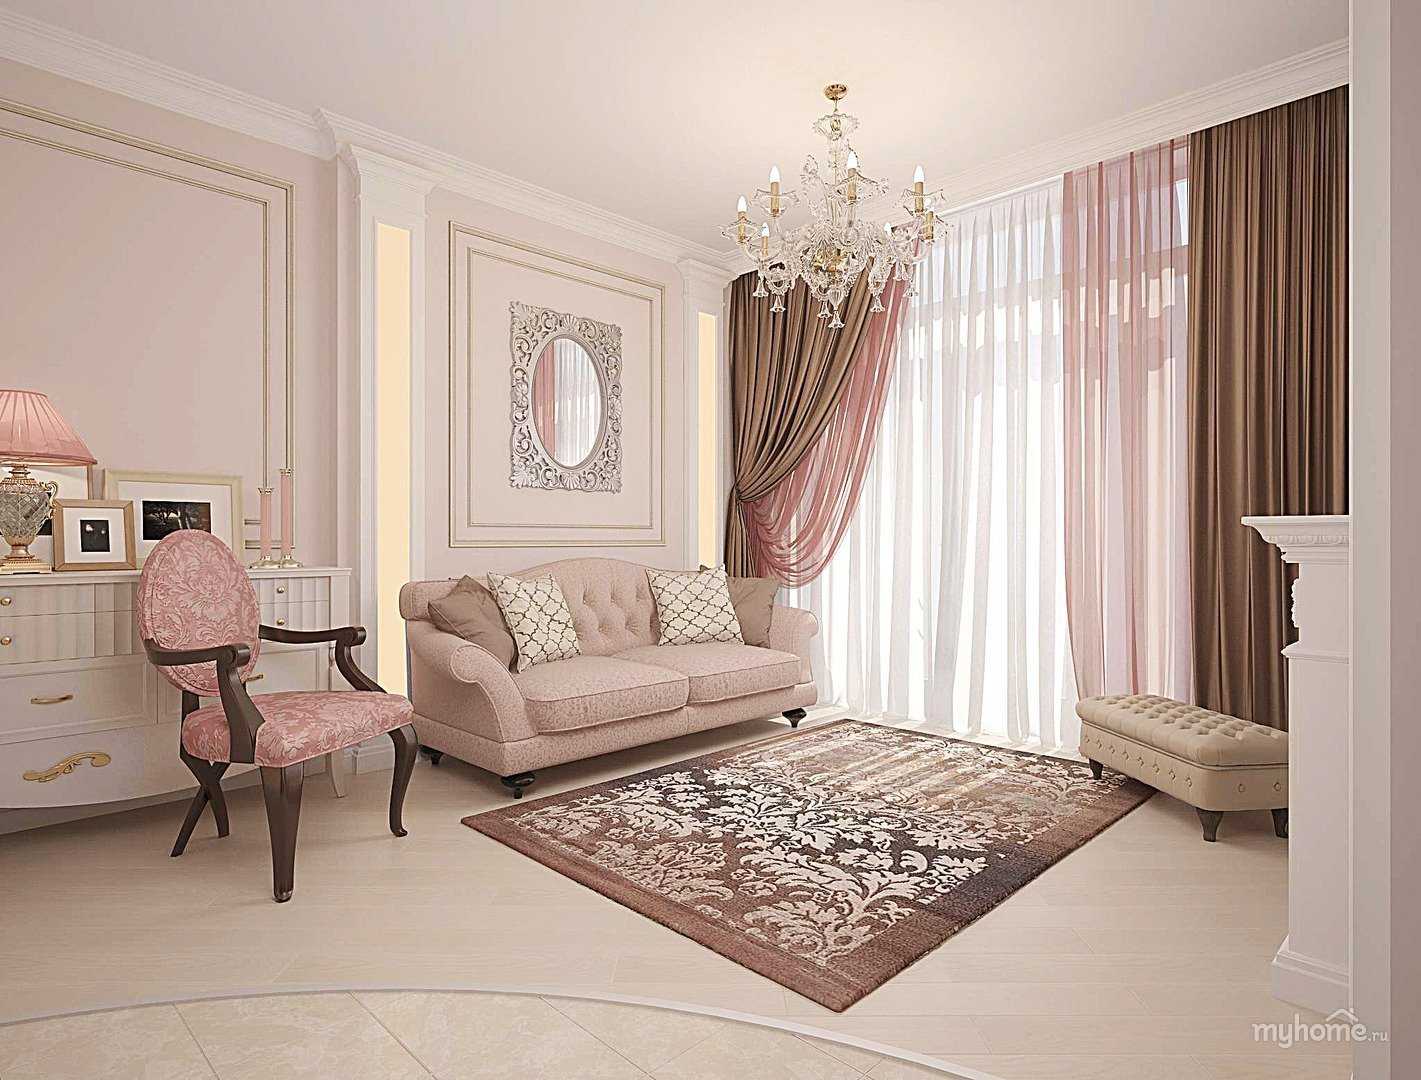 Пудровый цвет в интерьере: спальня, гостиная, стены комнаты и шторы - 18 фото